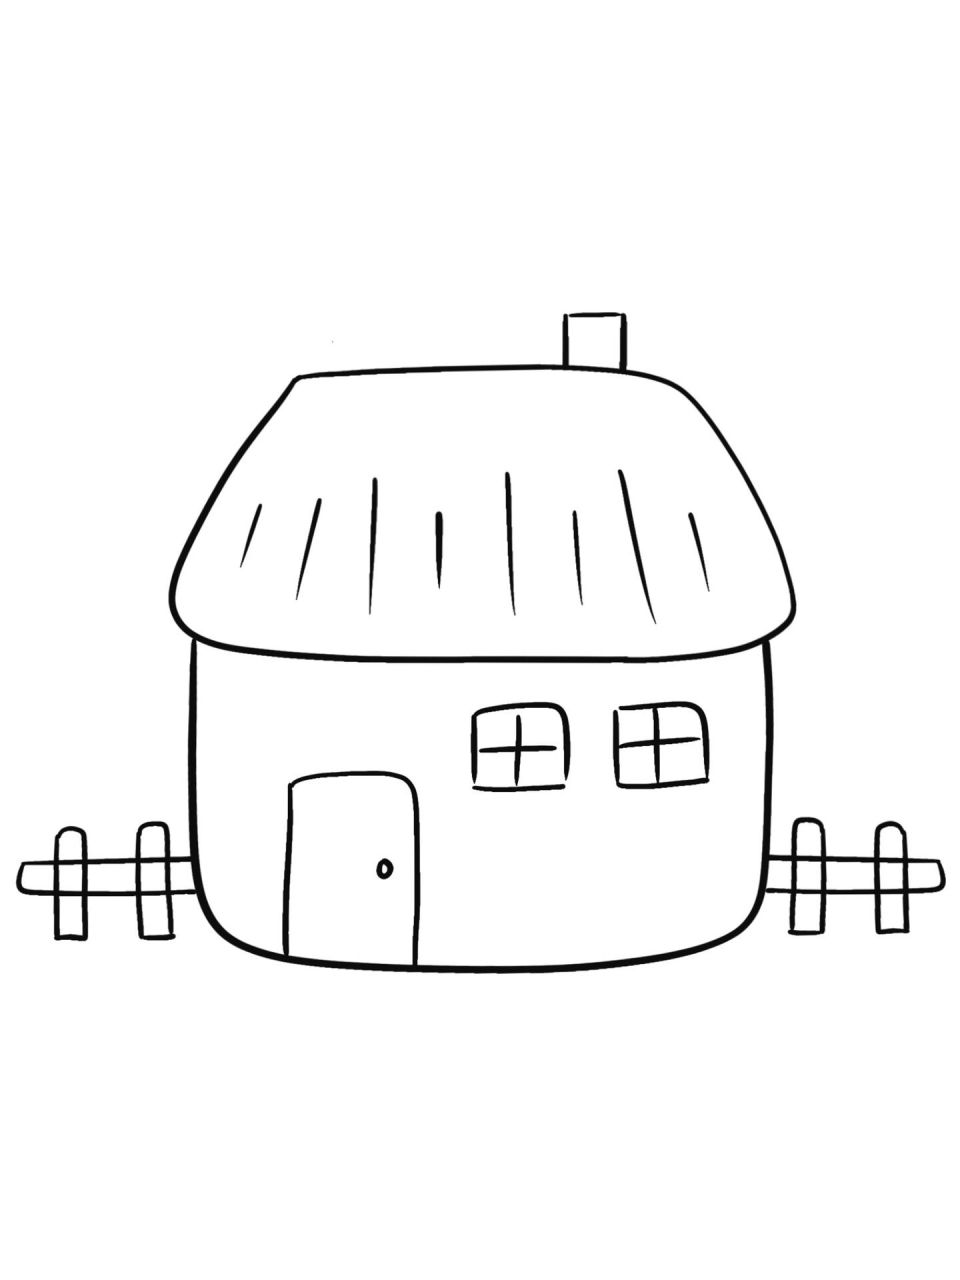 房子画法 小房子图片